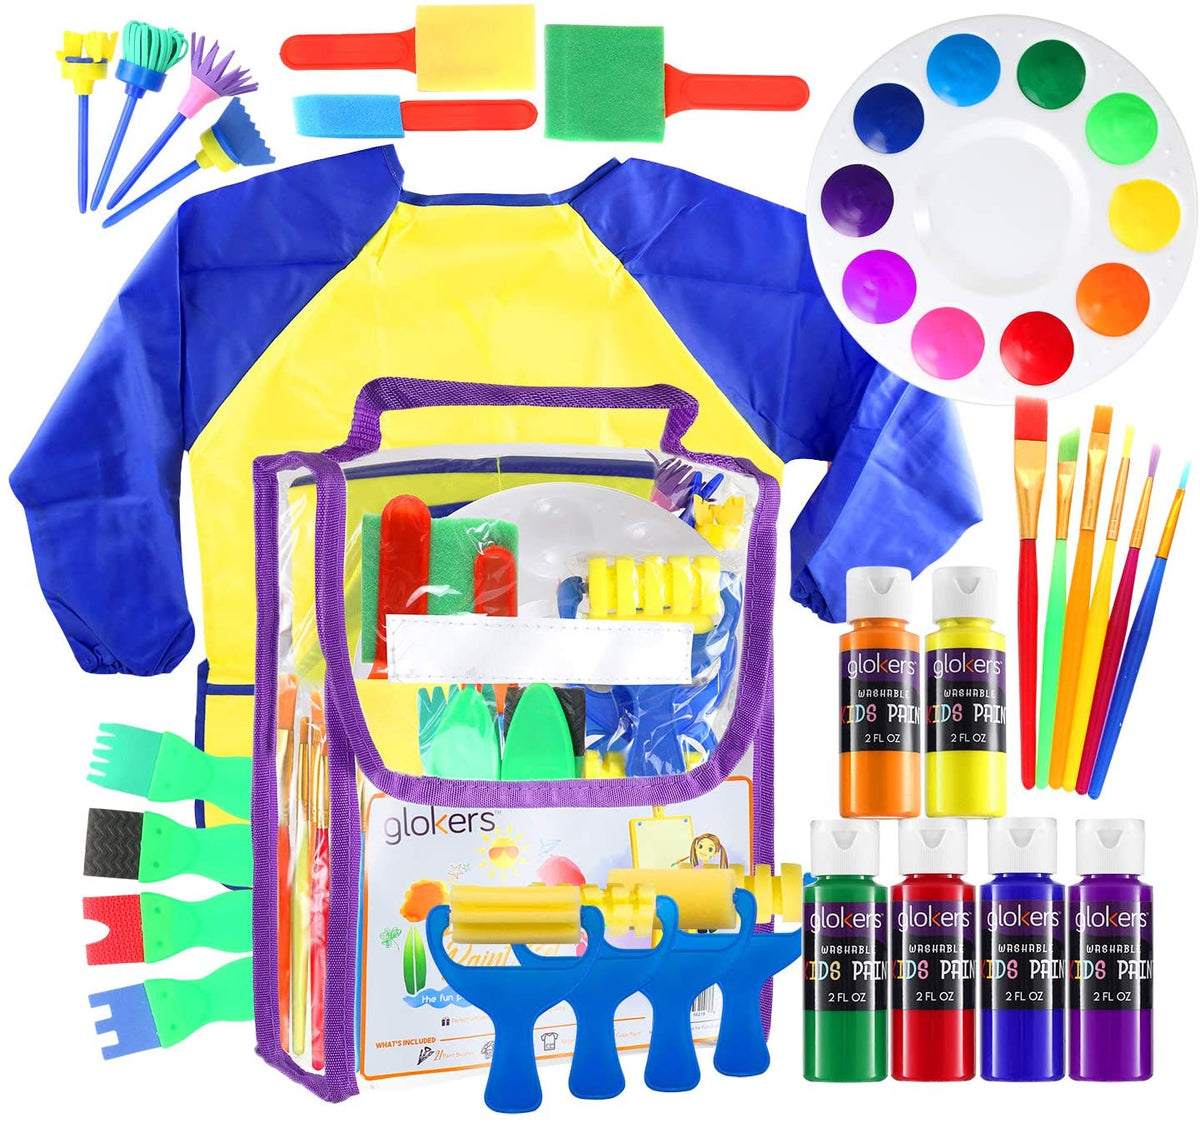 Kids Paint Set - 6 Colors Kids Paint 2 oz Each - Washable Paint for Kids,  Smock and Paintbrush Set Included Paint for Kids, Primary Colors Paint Set